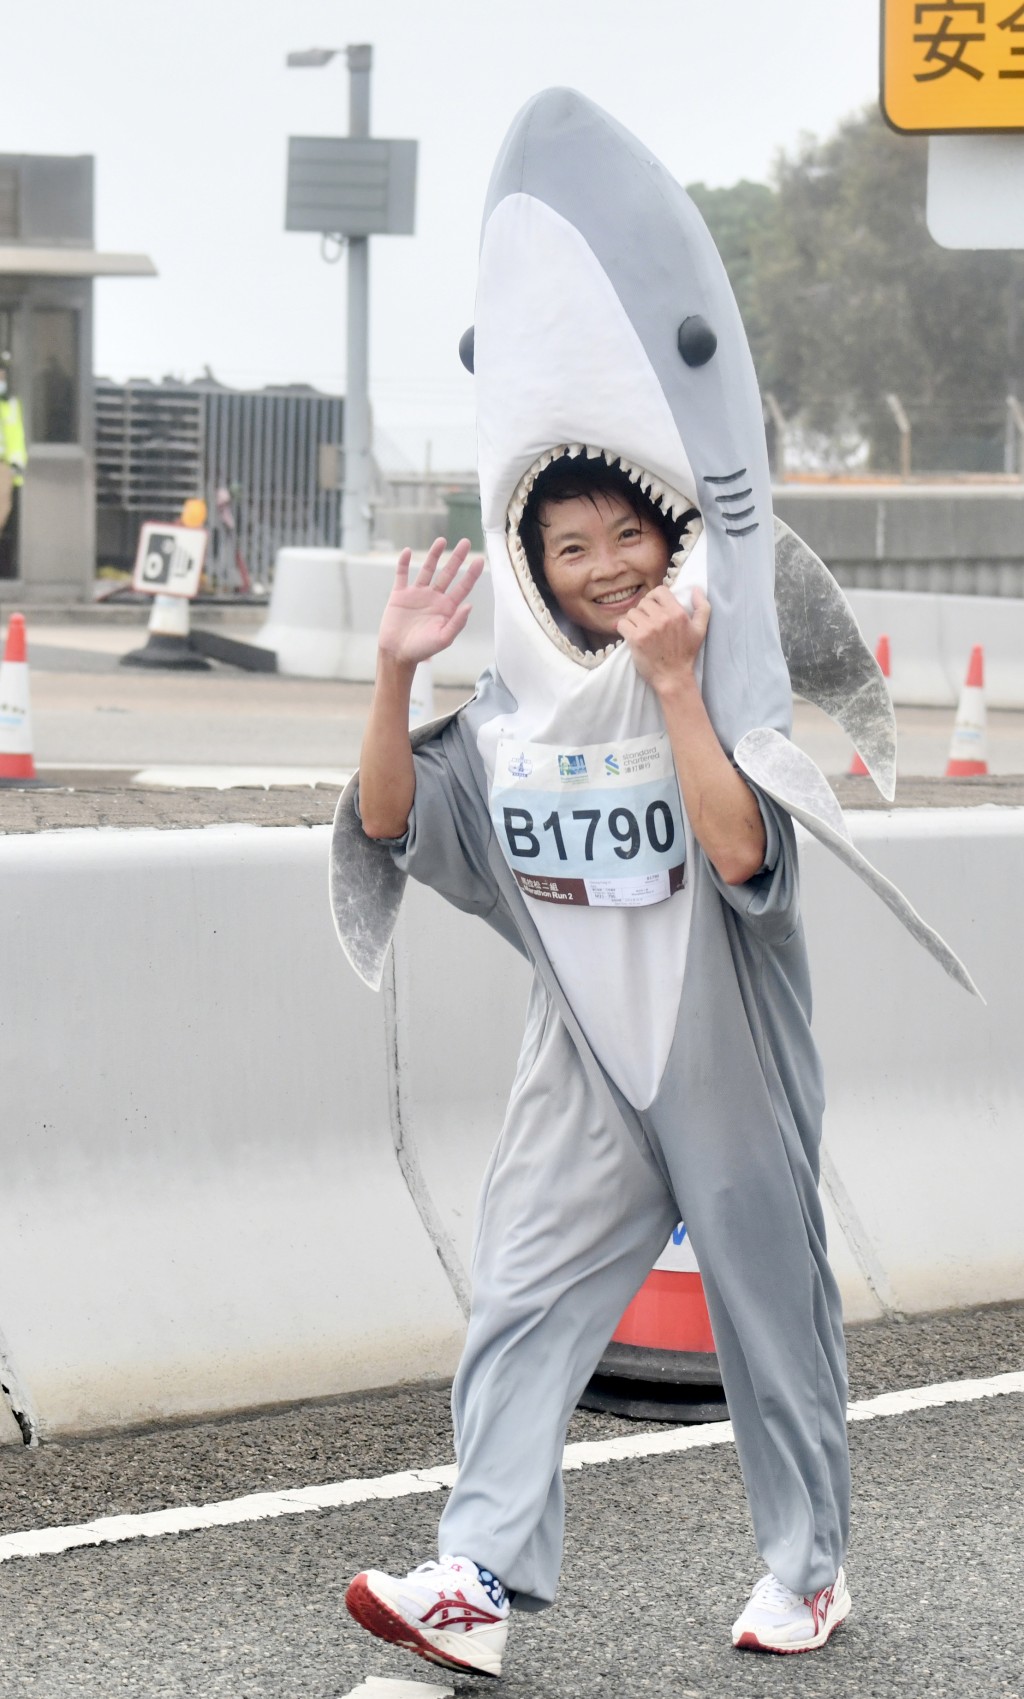 張小姐希望透過鯊魚裝扮，鼓勵大家多食素，避免再捕殺鯊魚，保護生態環境。盧江球攝